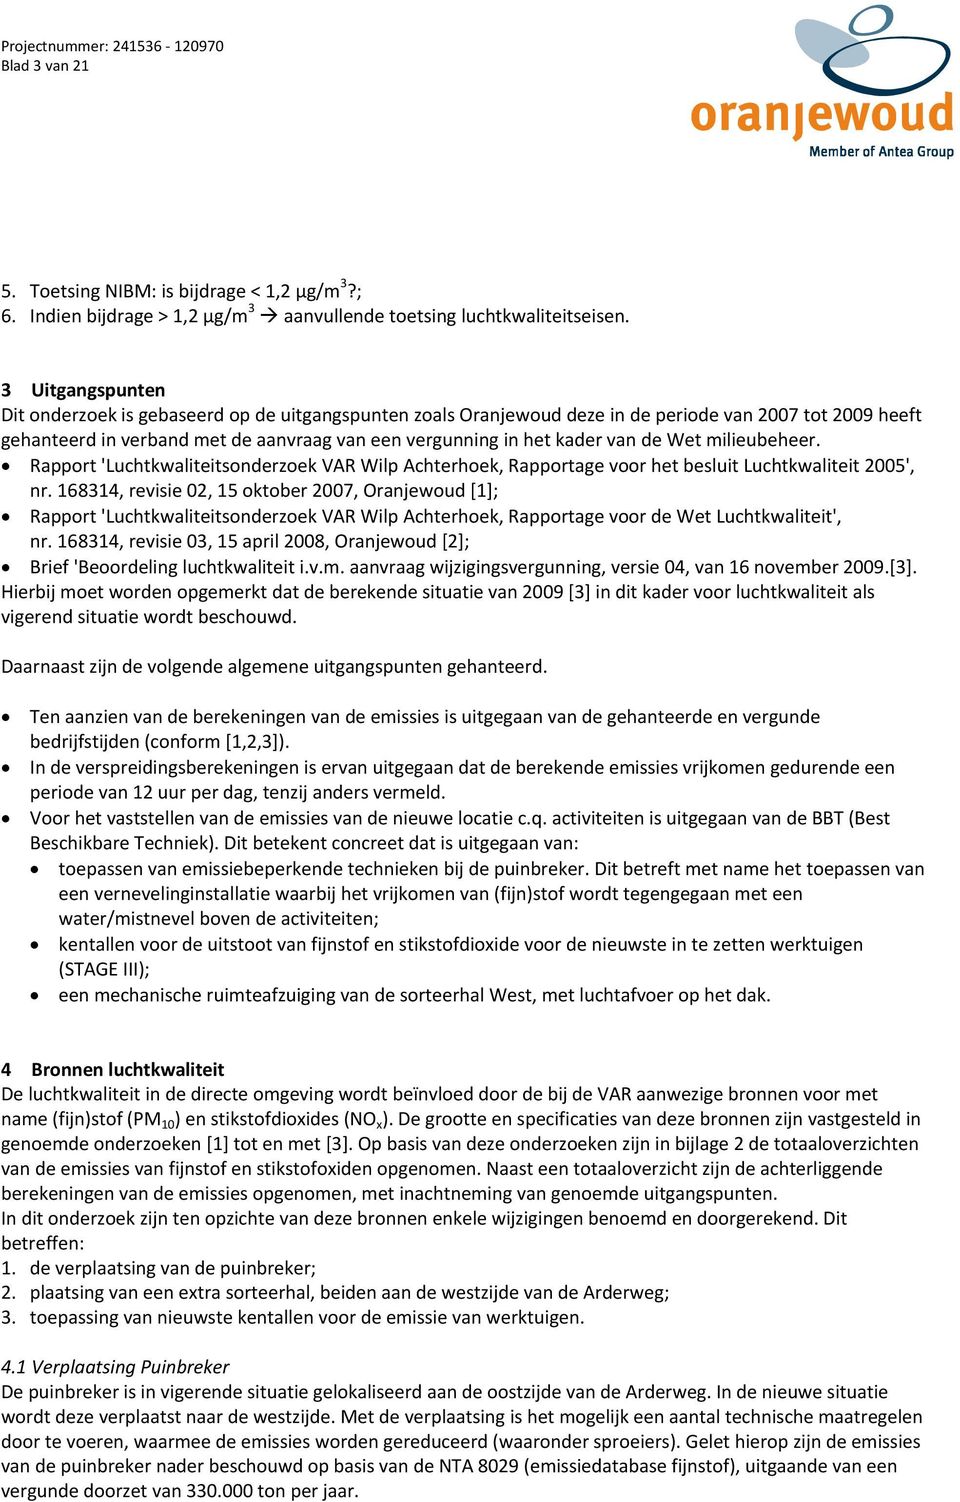 de Wet milieubeheer. Rapport 'Luchtkwaliteitsonderzoek VAR Wilp Achterhoek, Rapportage voor het besluit Luchtkwaliteit 2005', nr.